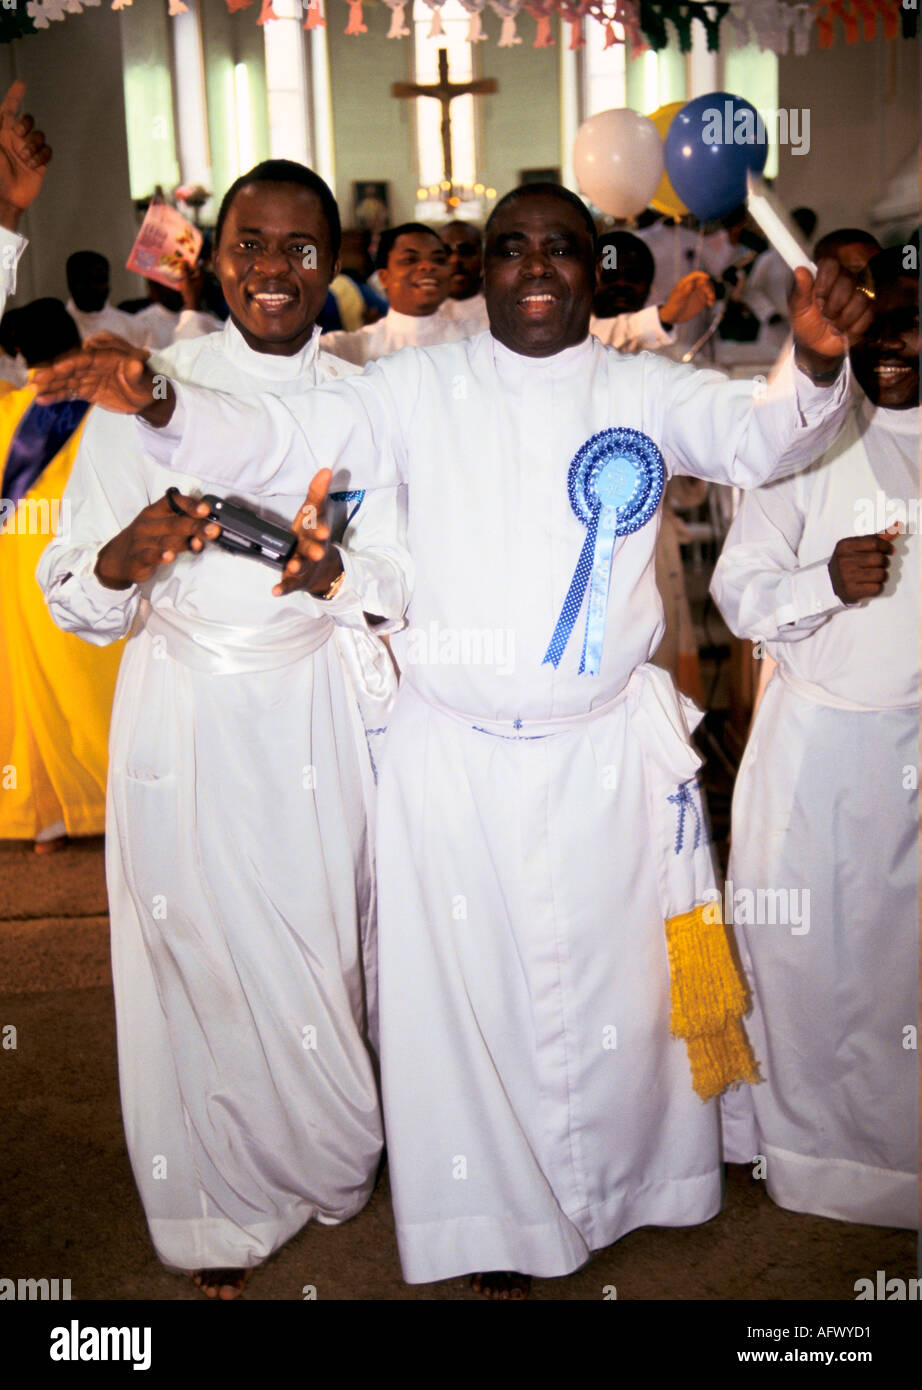 Black British African Church années 1990 Royaume-Uni. Église céleste du Christ. Les Yoruba récolte festival prêtres danse spirituelle célébration de la foi Banque D'Images